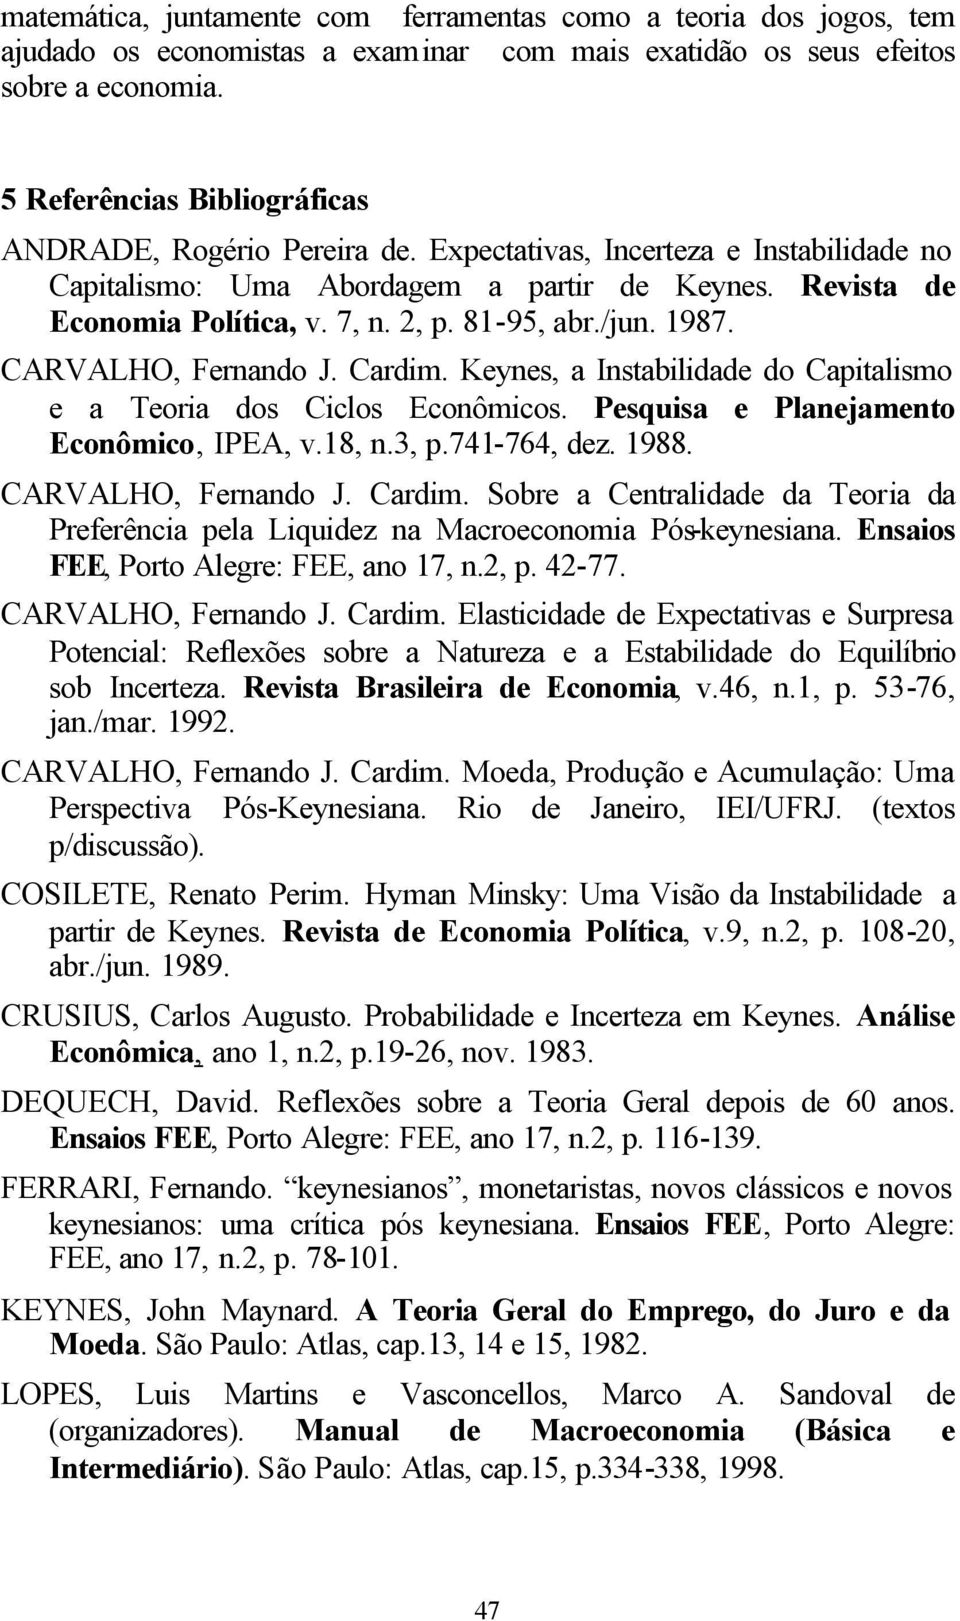 81-95, abr./jun. 1987. CARVALHO, Fernando J. Cardim. Keynes, a Instabilidade do Capitalismo e a Teoria dos Ciclos Econômicos. Pesquisa e Planejamento Econômico, IPEA, v.18, n.3, p.741-764, dez. 1988.